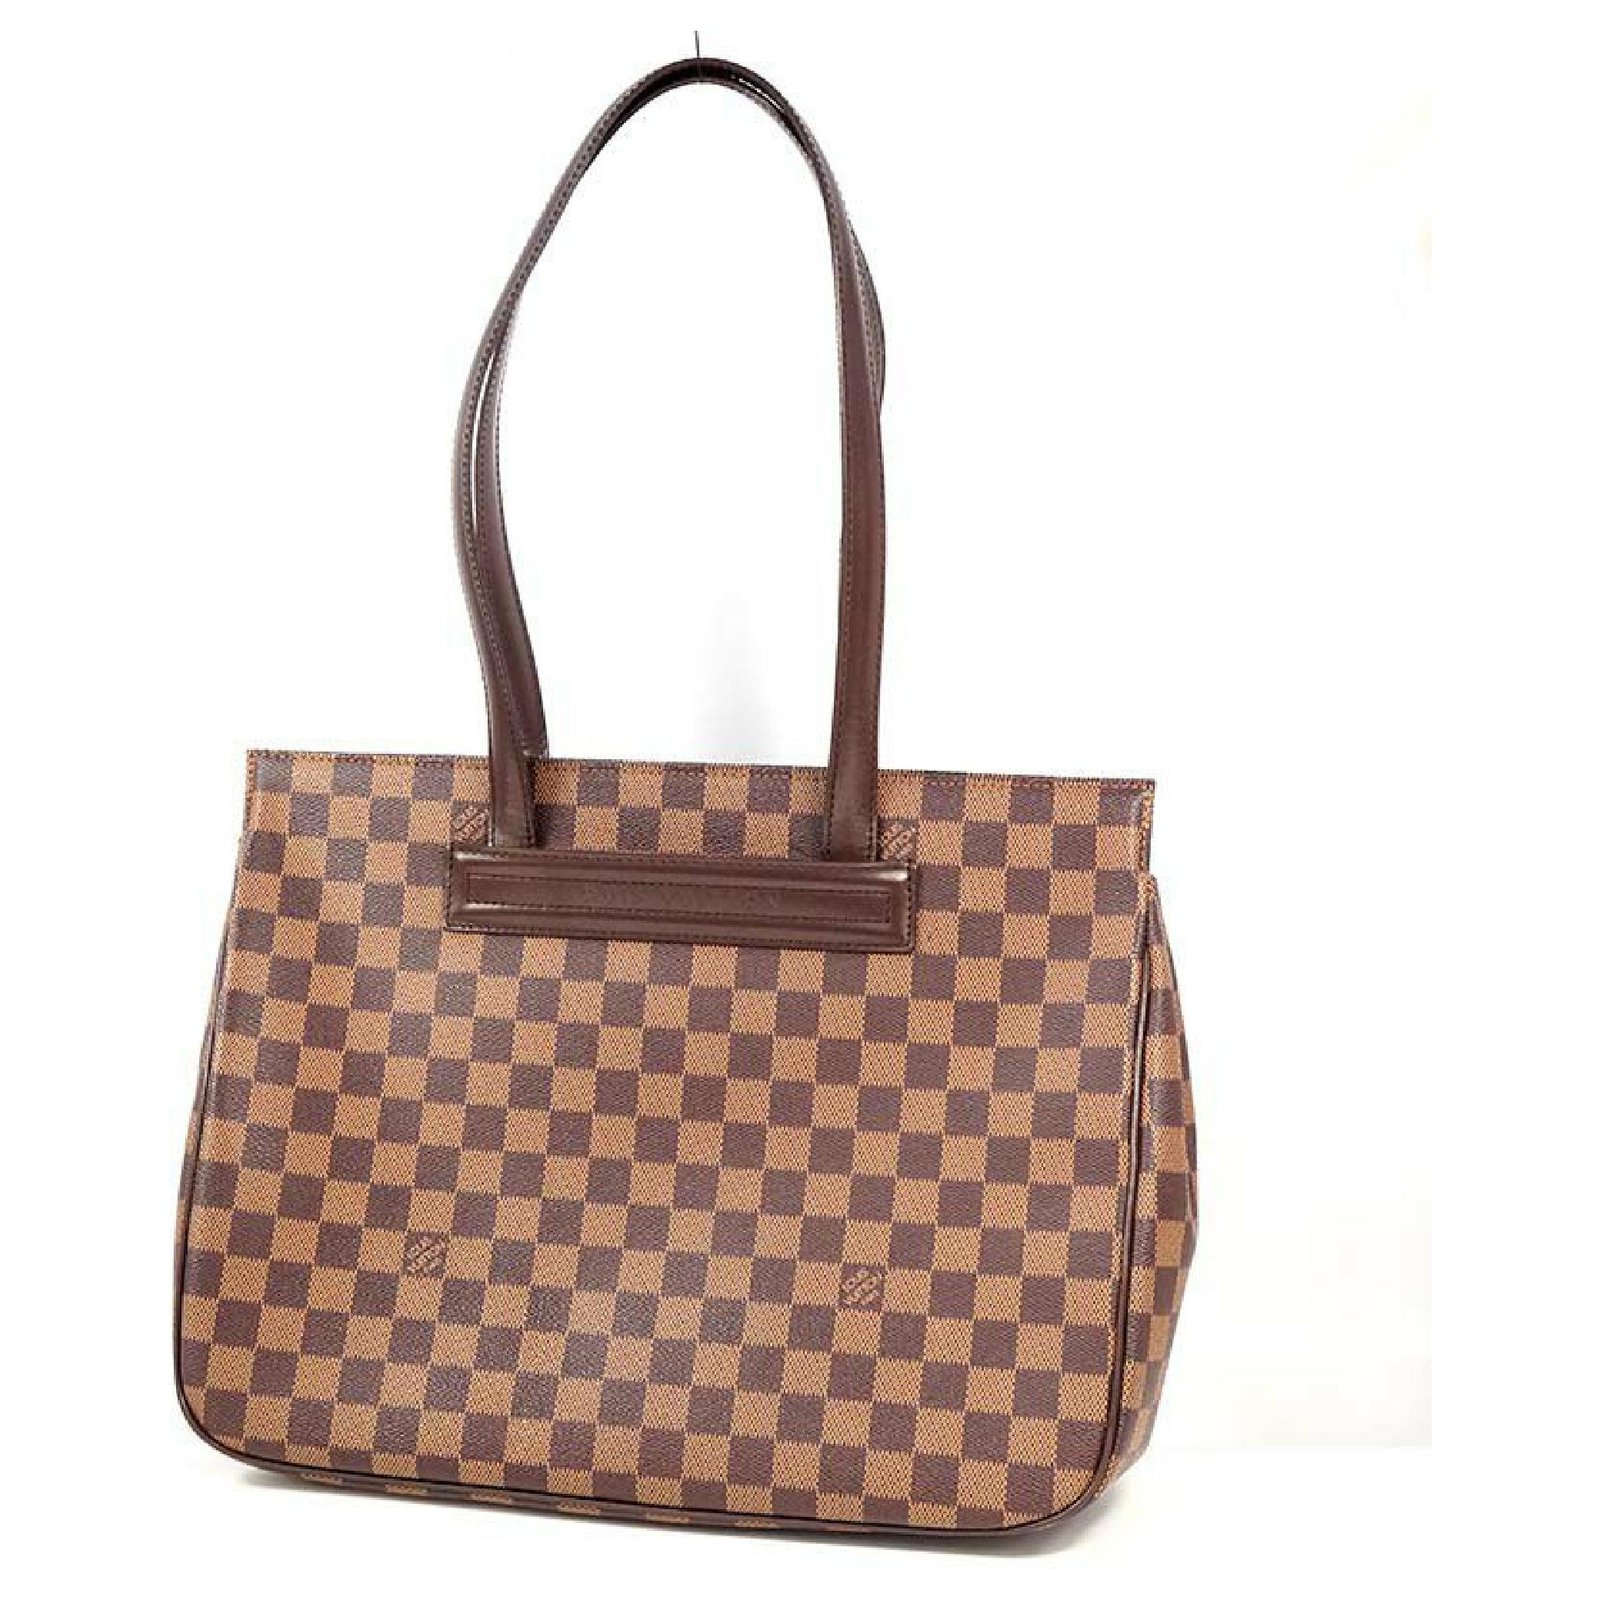 Louis+Vuitton+Parioli+Shoulder+Bag+PM+Brown+Canvas for sale online